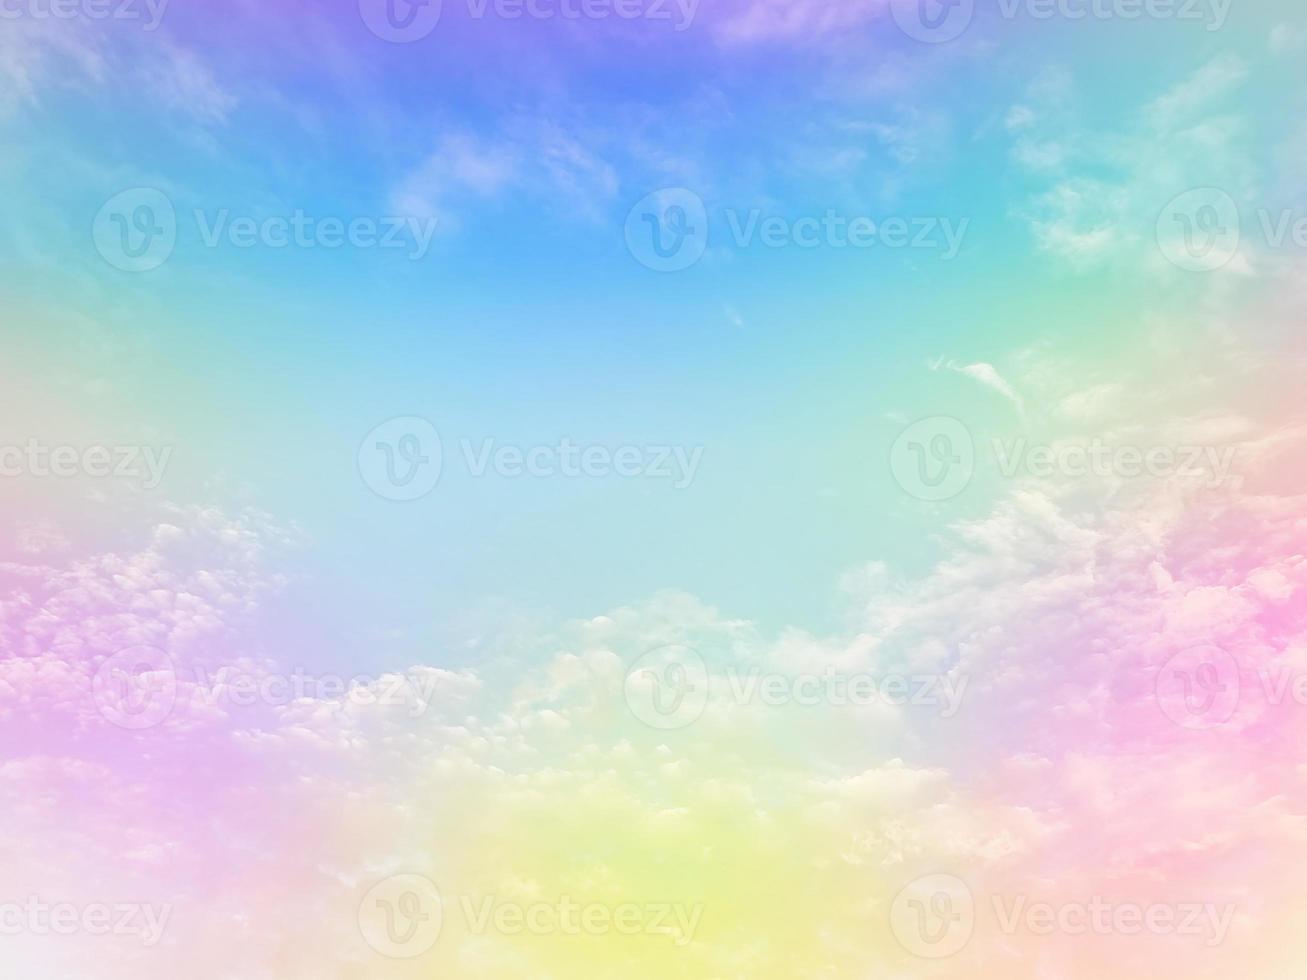 schönheit süß pastellgrün blau bunt mit flauschigen wolken am himmel. mehrfarbiges Regenbogenbild. abstrakte Fantasie wachsendes Licht foto